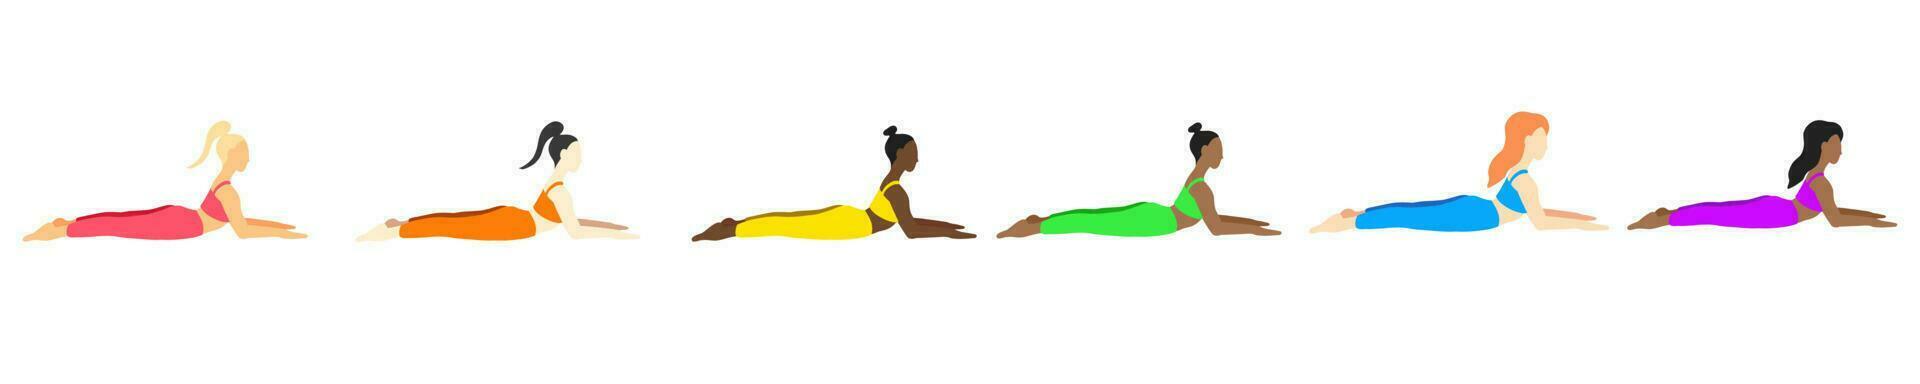 ioga poses dentro desenho animado plano estilo vetor